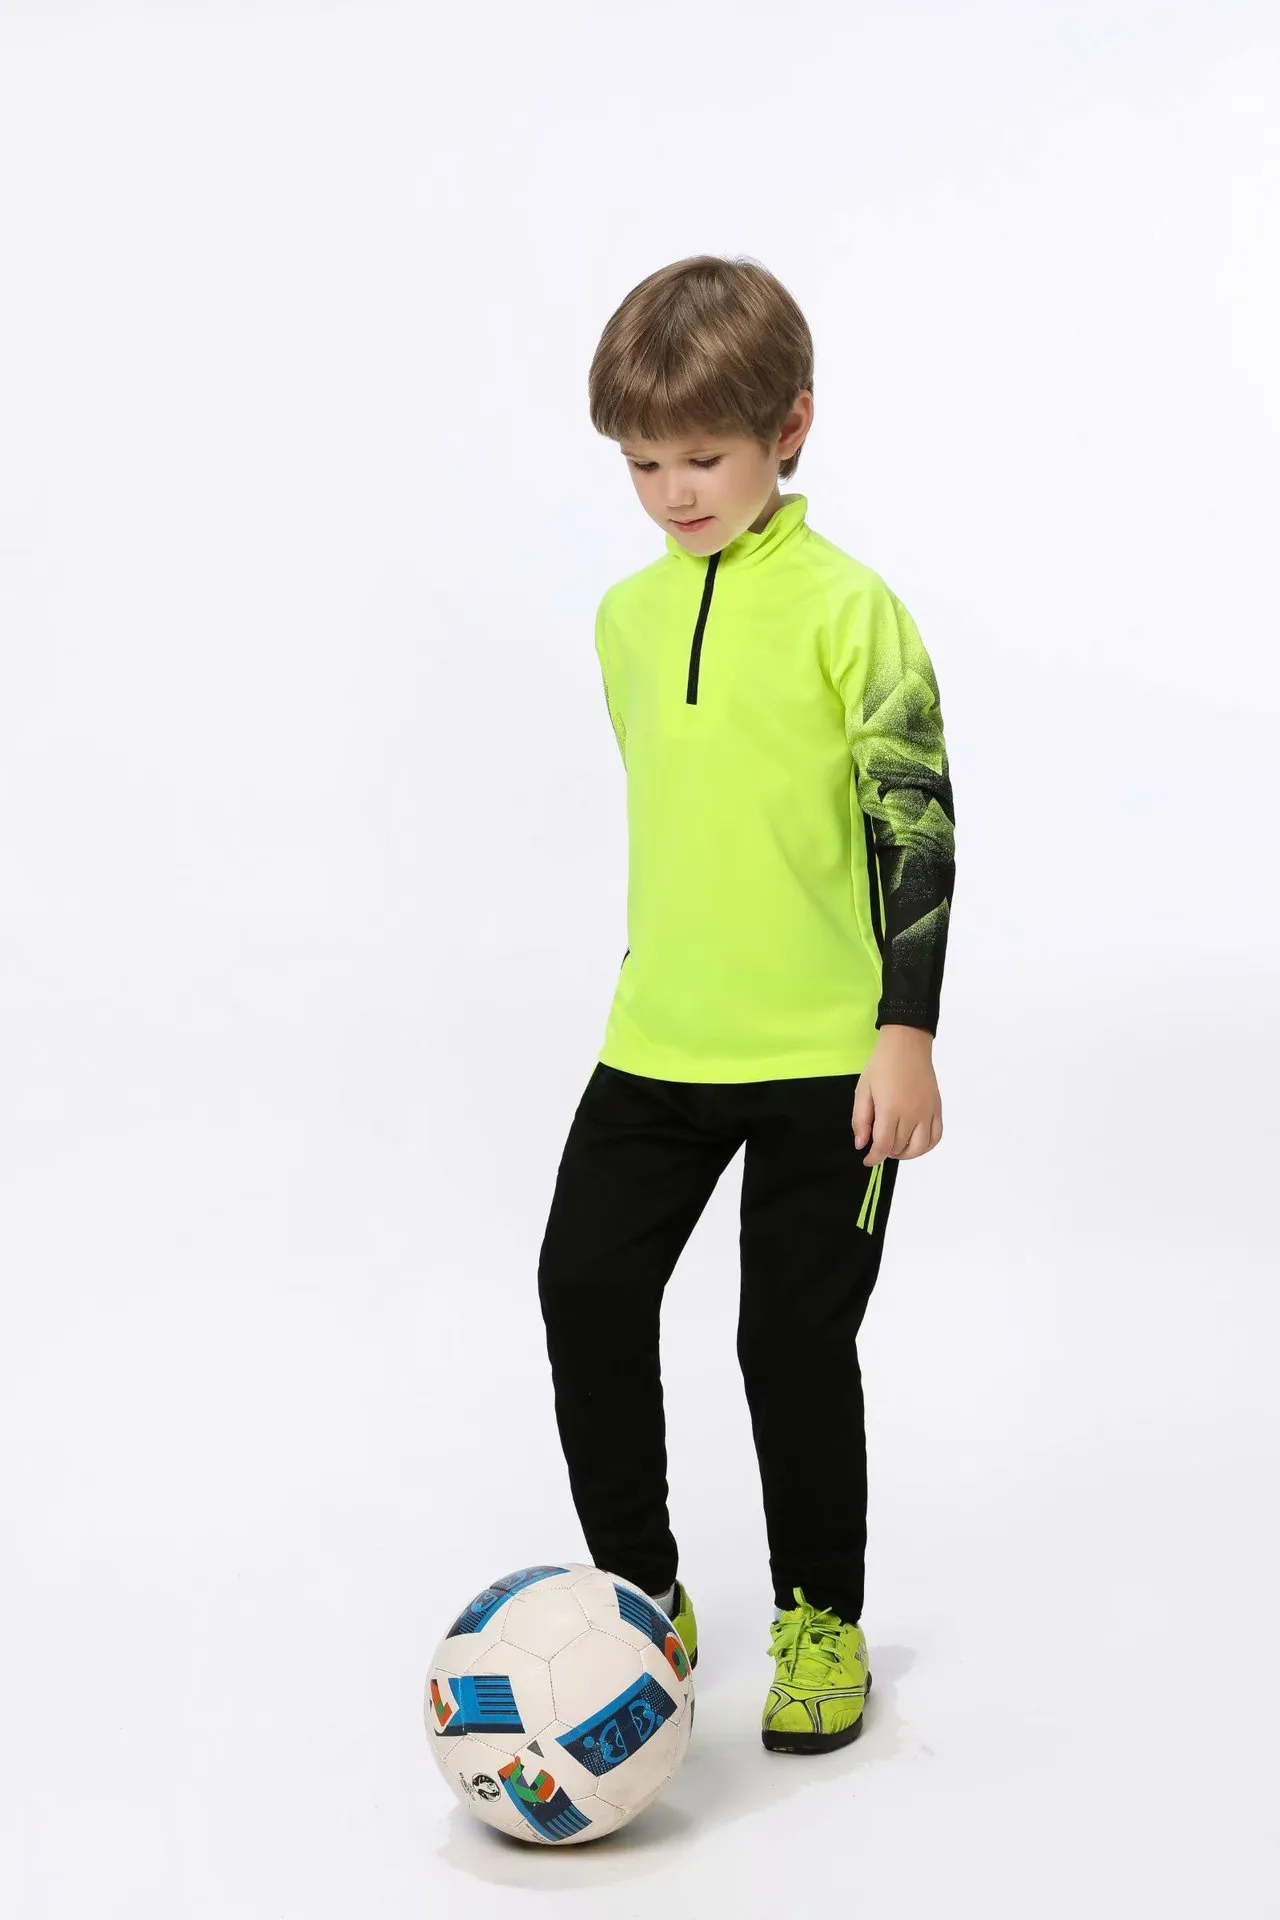 Jessie_kicks #HD61 Oweens Design Fashion Jerseys Kinderbekleidung Ourtdoor Sport Support QC Bilder vor dem Versand